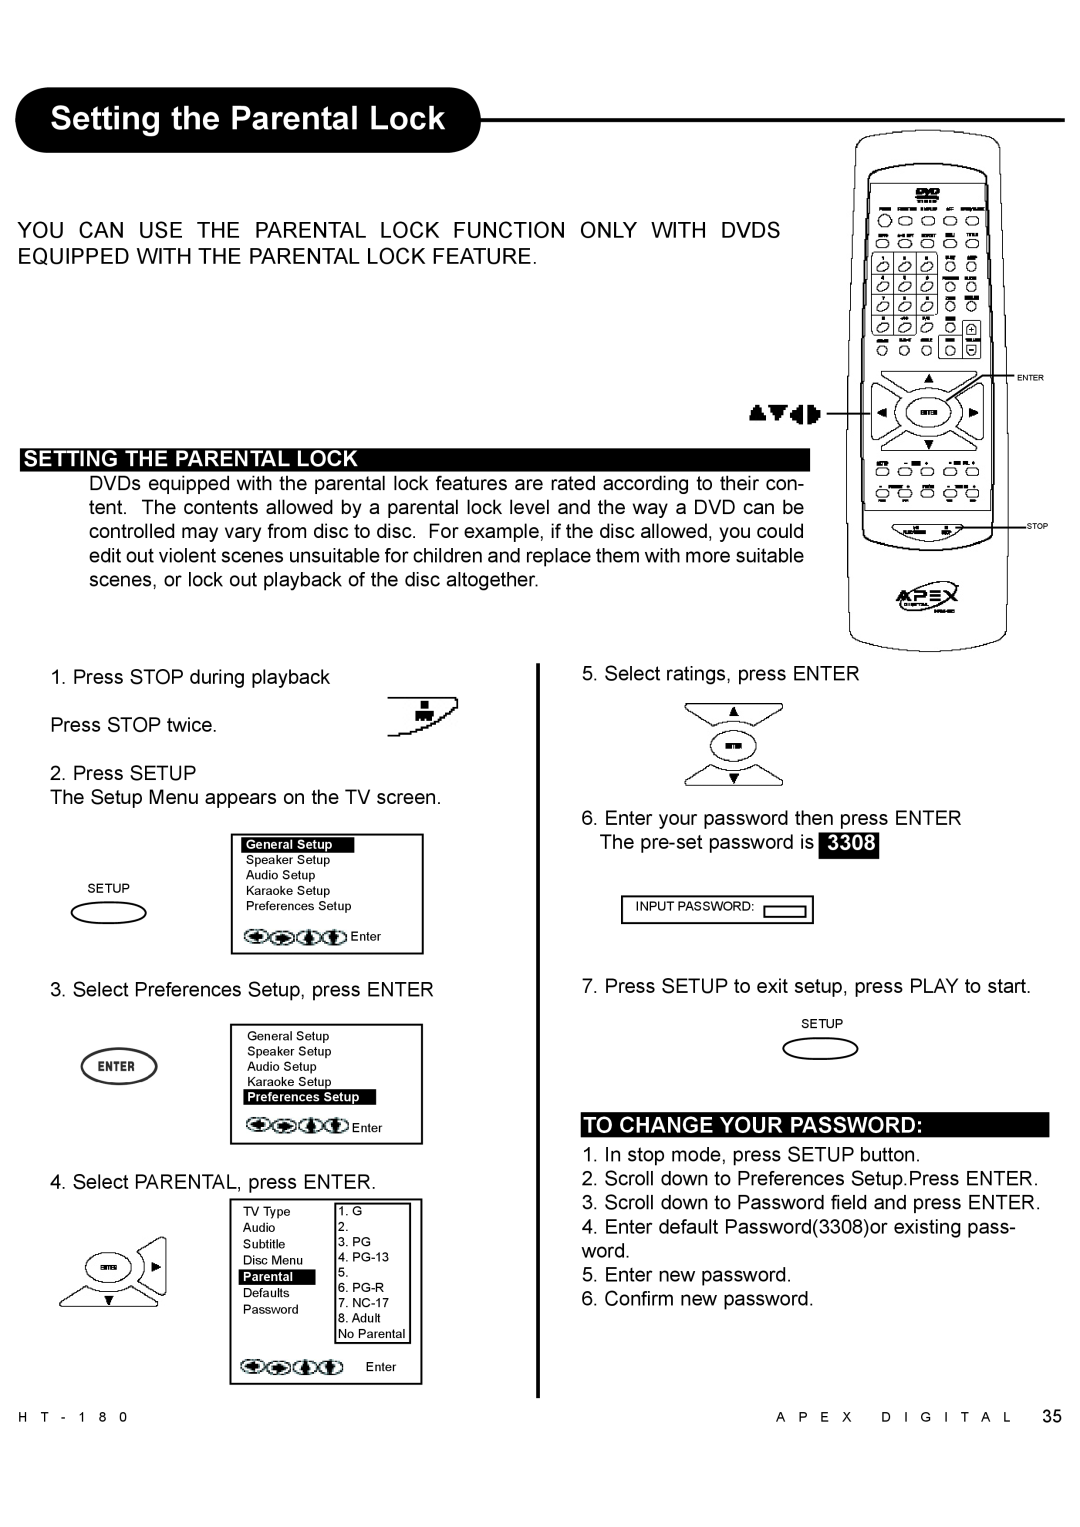 Apex Digital HT-180 manual Setting the Parental Lock, Setting The Parental Lock, To Change Your Password 